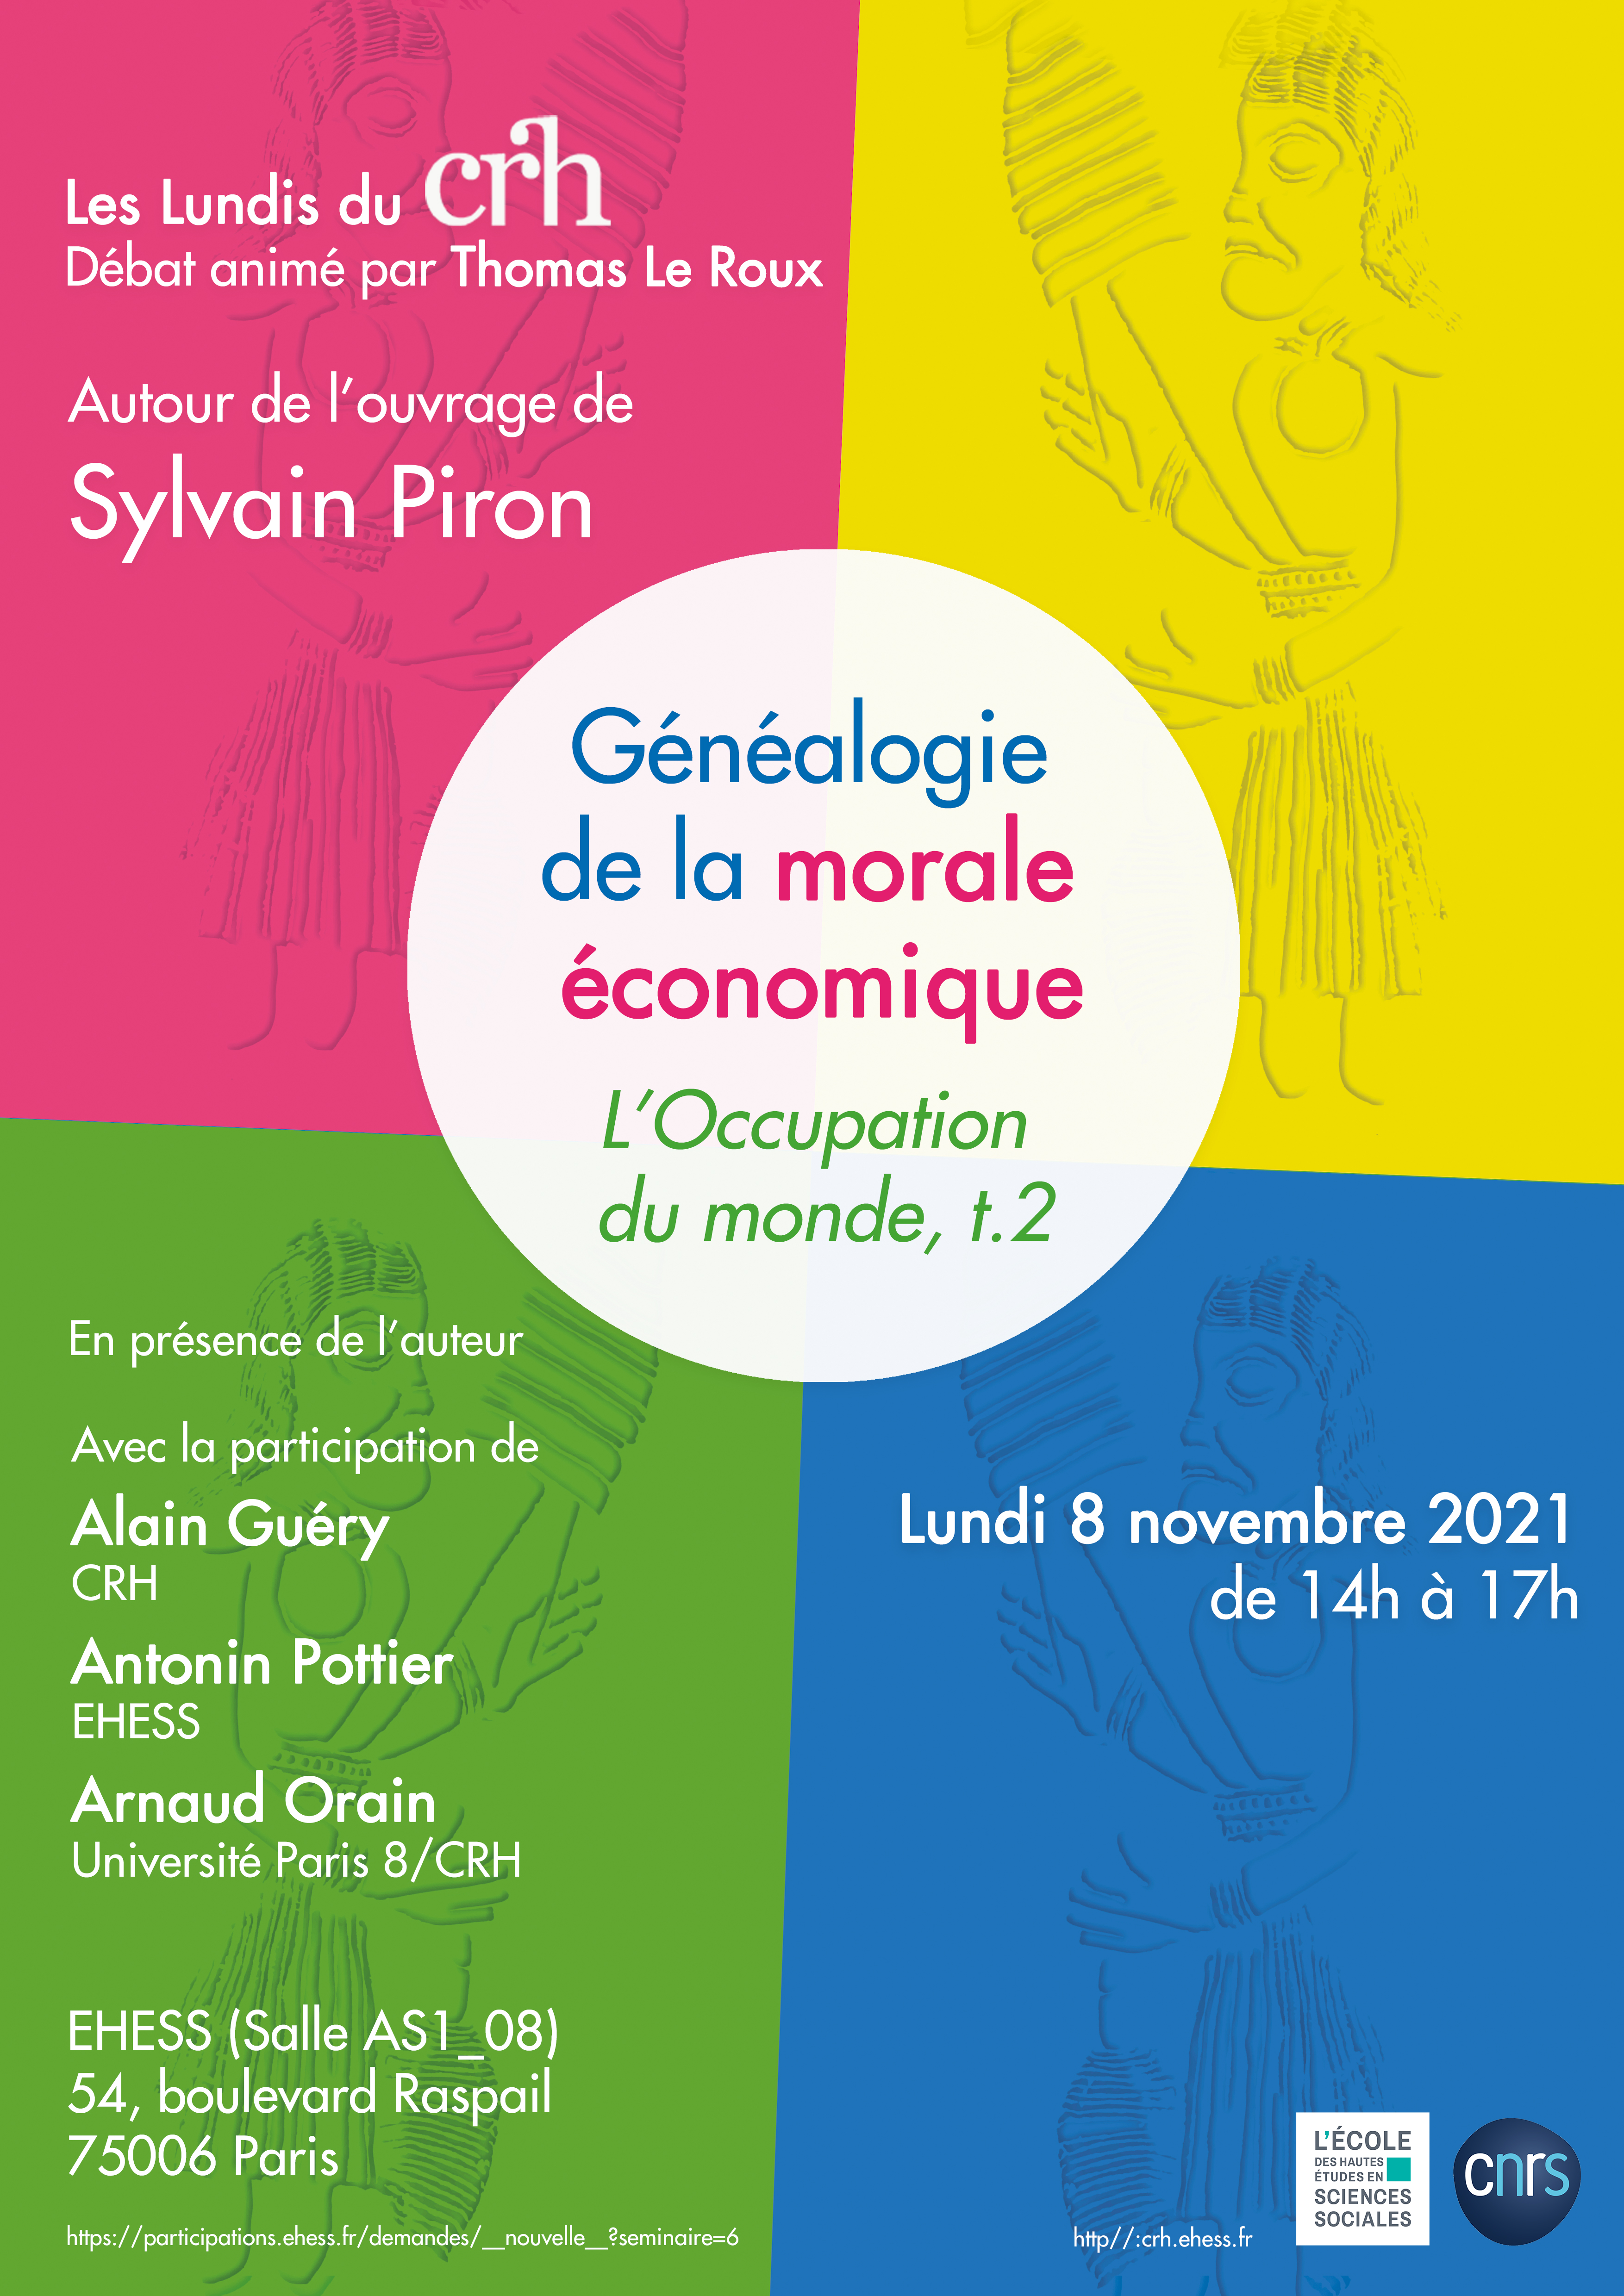 Autour de l'ouvrage de Sylvain Piron, Généalogie de la morale économique. L’Occupation du monde, t.2